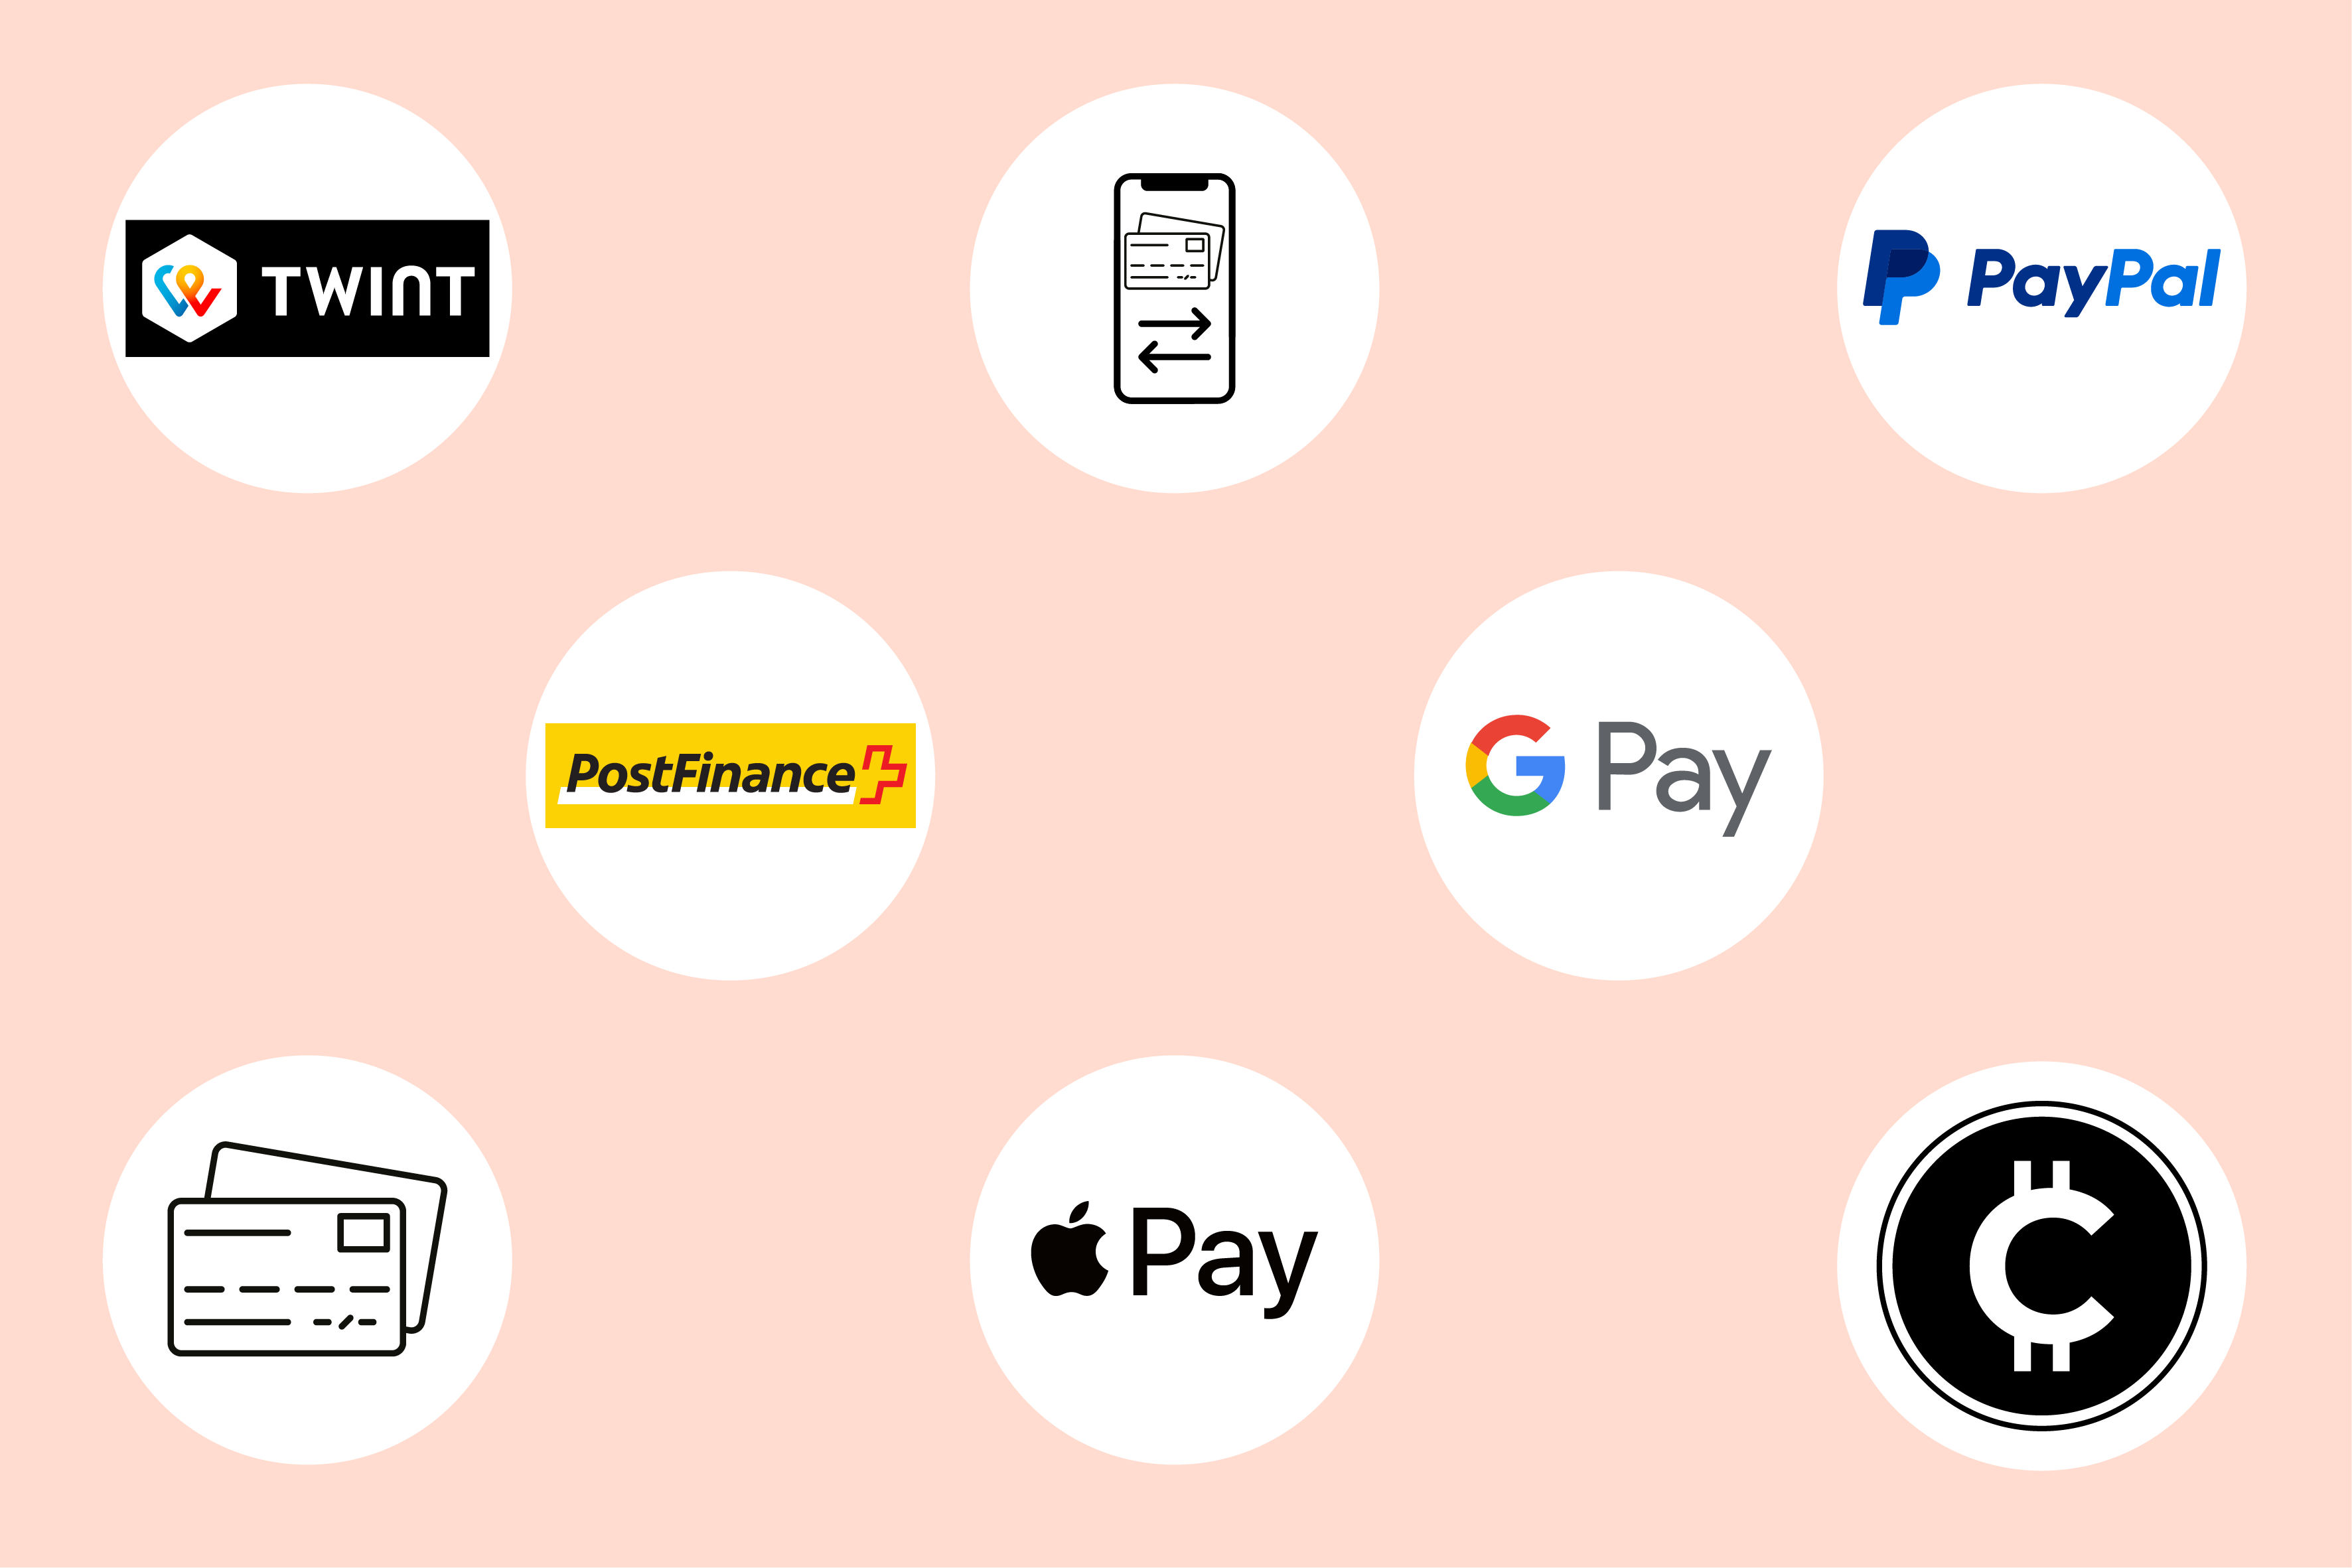 Kreditkarte 

Banküberweisung 

Postfinance 

Twint 

Automatische Belastung (per Lastschriftverfahren oder Dauerauftrag) 

PayPal 

Google Pay  

Apple Pay 

Krypto